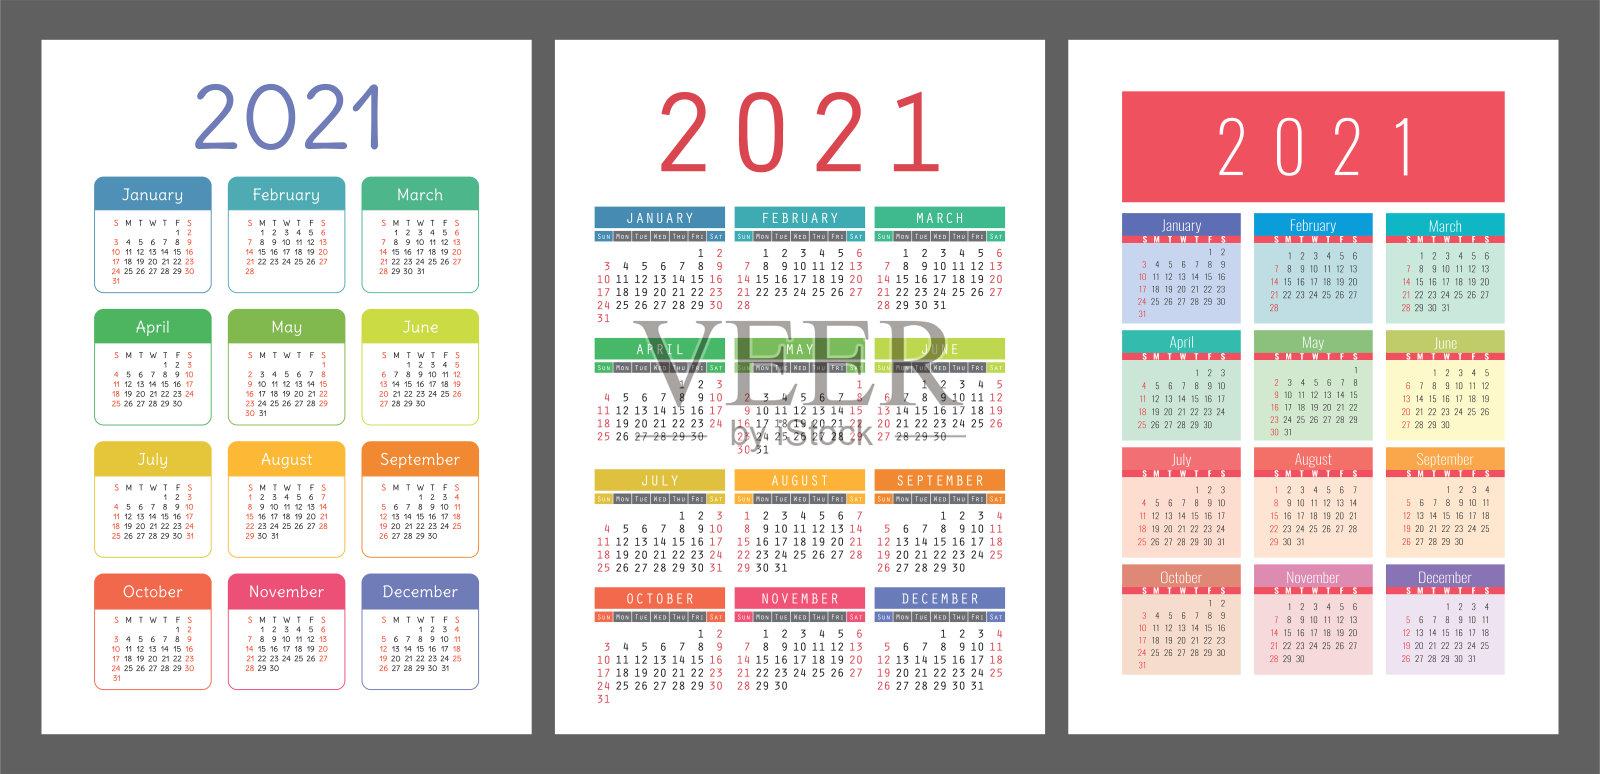 日历设定2021年。矢量口袋或墙壁压延机模板收集。简单的设计。一周从周日开始。一月，二月，三月，四月，五月，六月，七月，八月，九月，十月，十一月，十二月设计模板素材